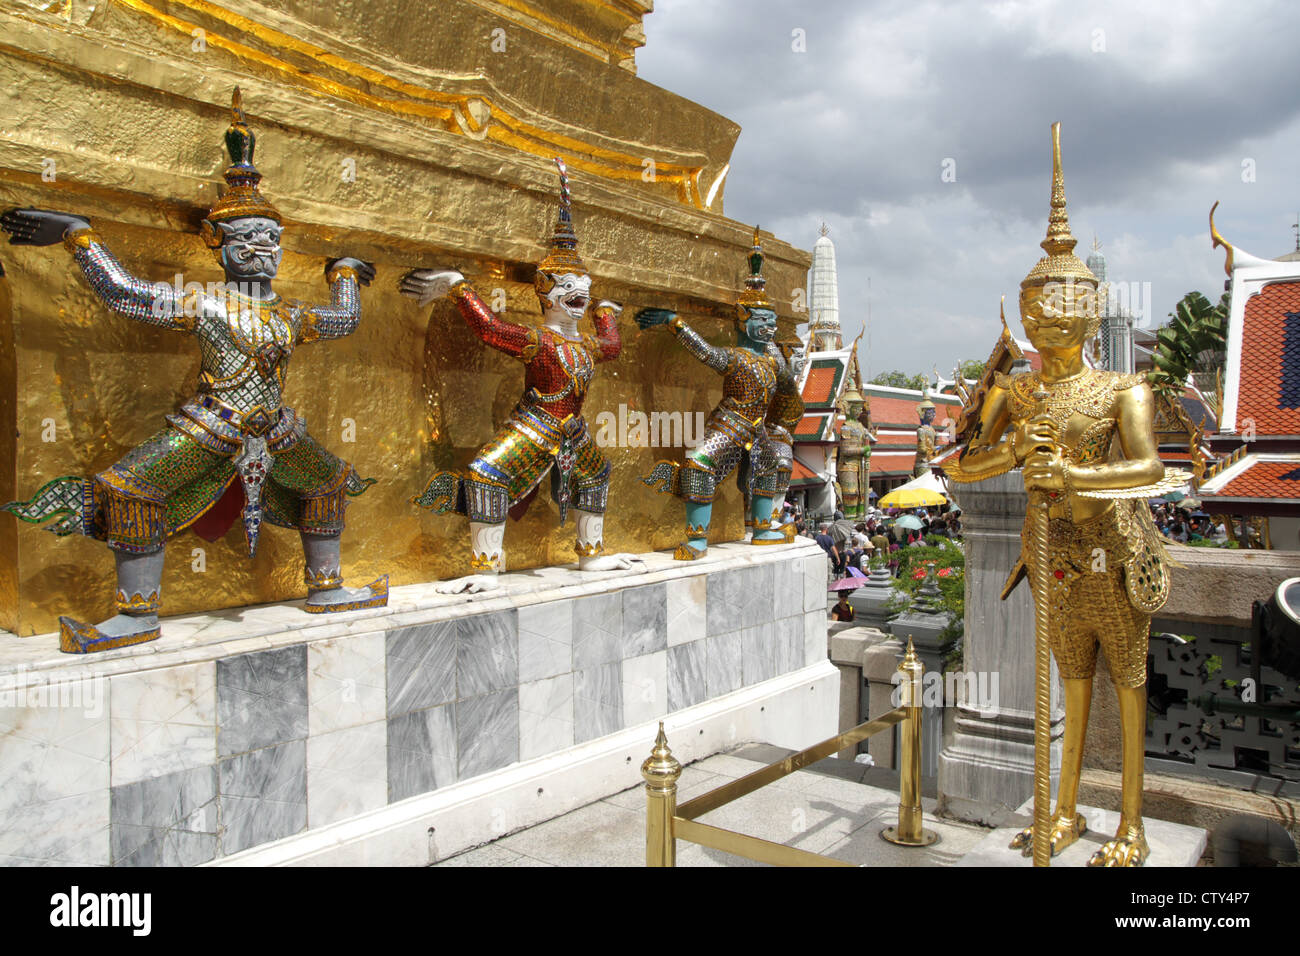 Il demone mitologica figura a guardia del Tempio di grand palace, Bangkok Foto Stock